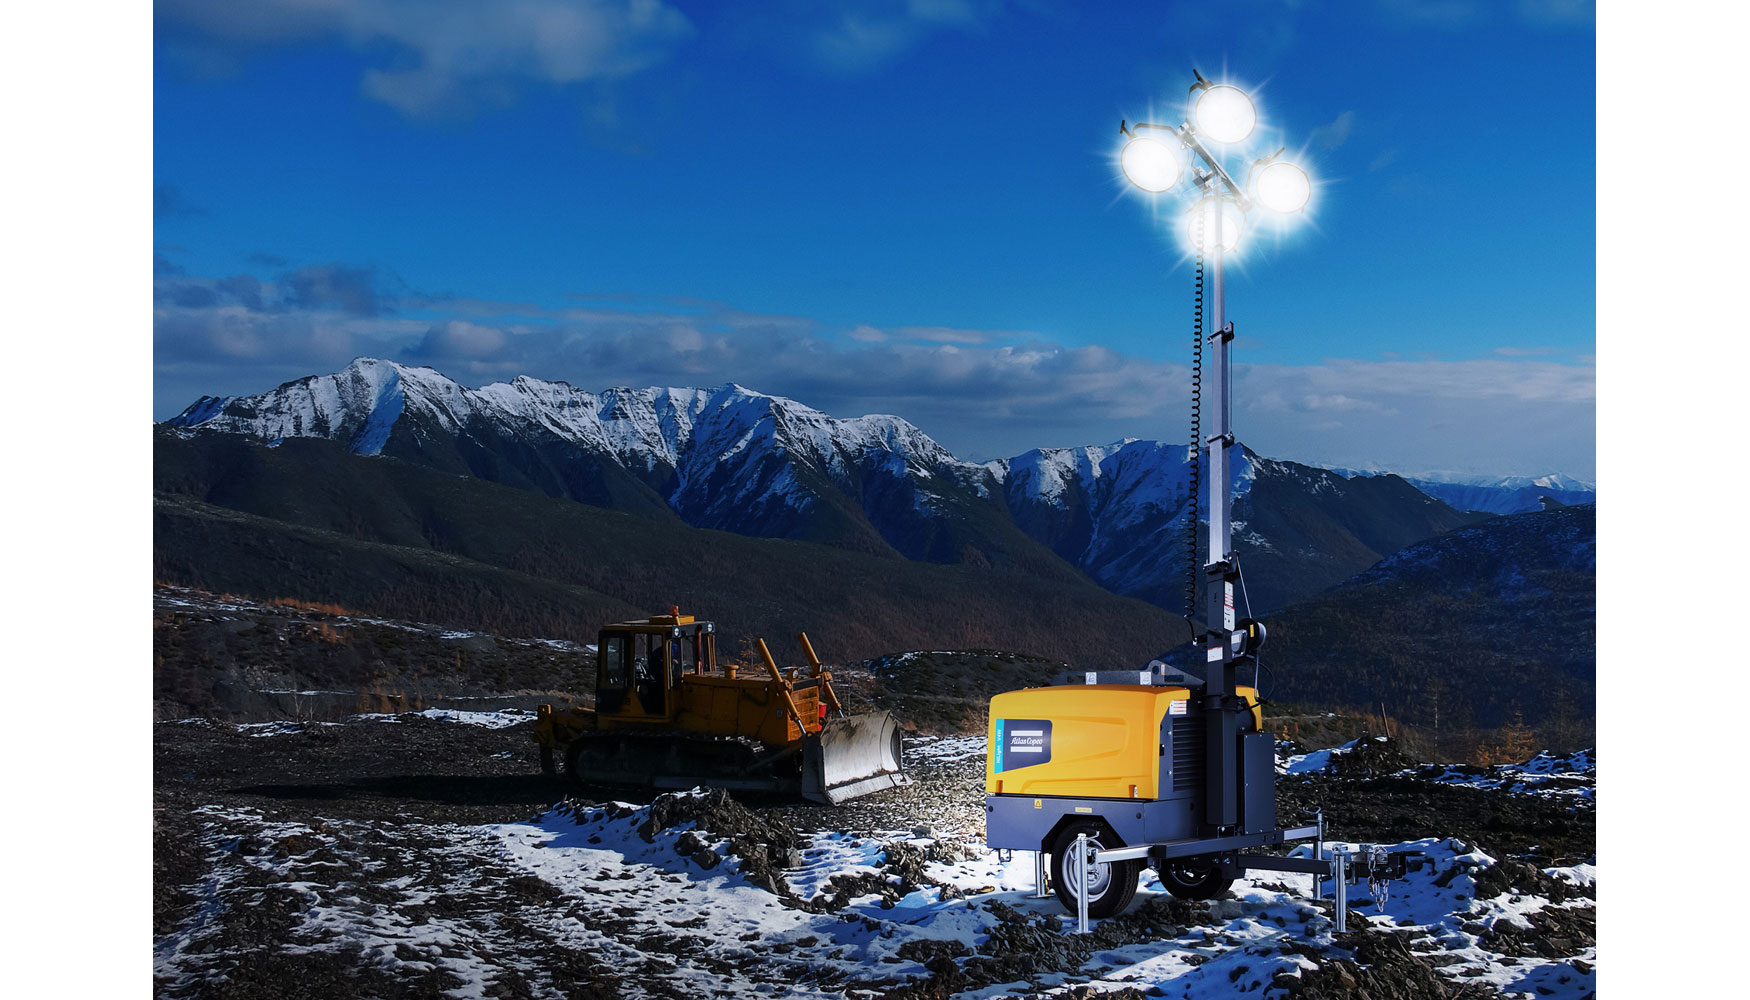 La nueva torre de iluminacin de Atlas Copco est equipada con 4 lmparas de halogenuro metlico de 1.000 W